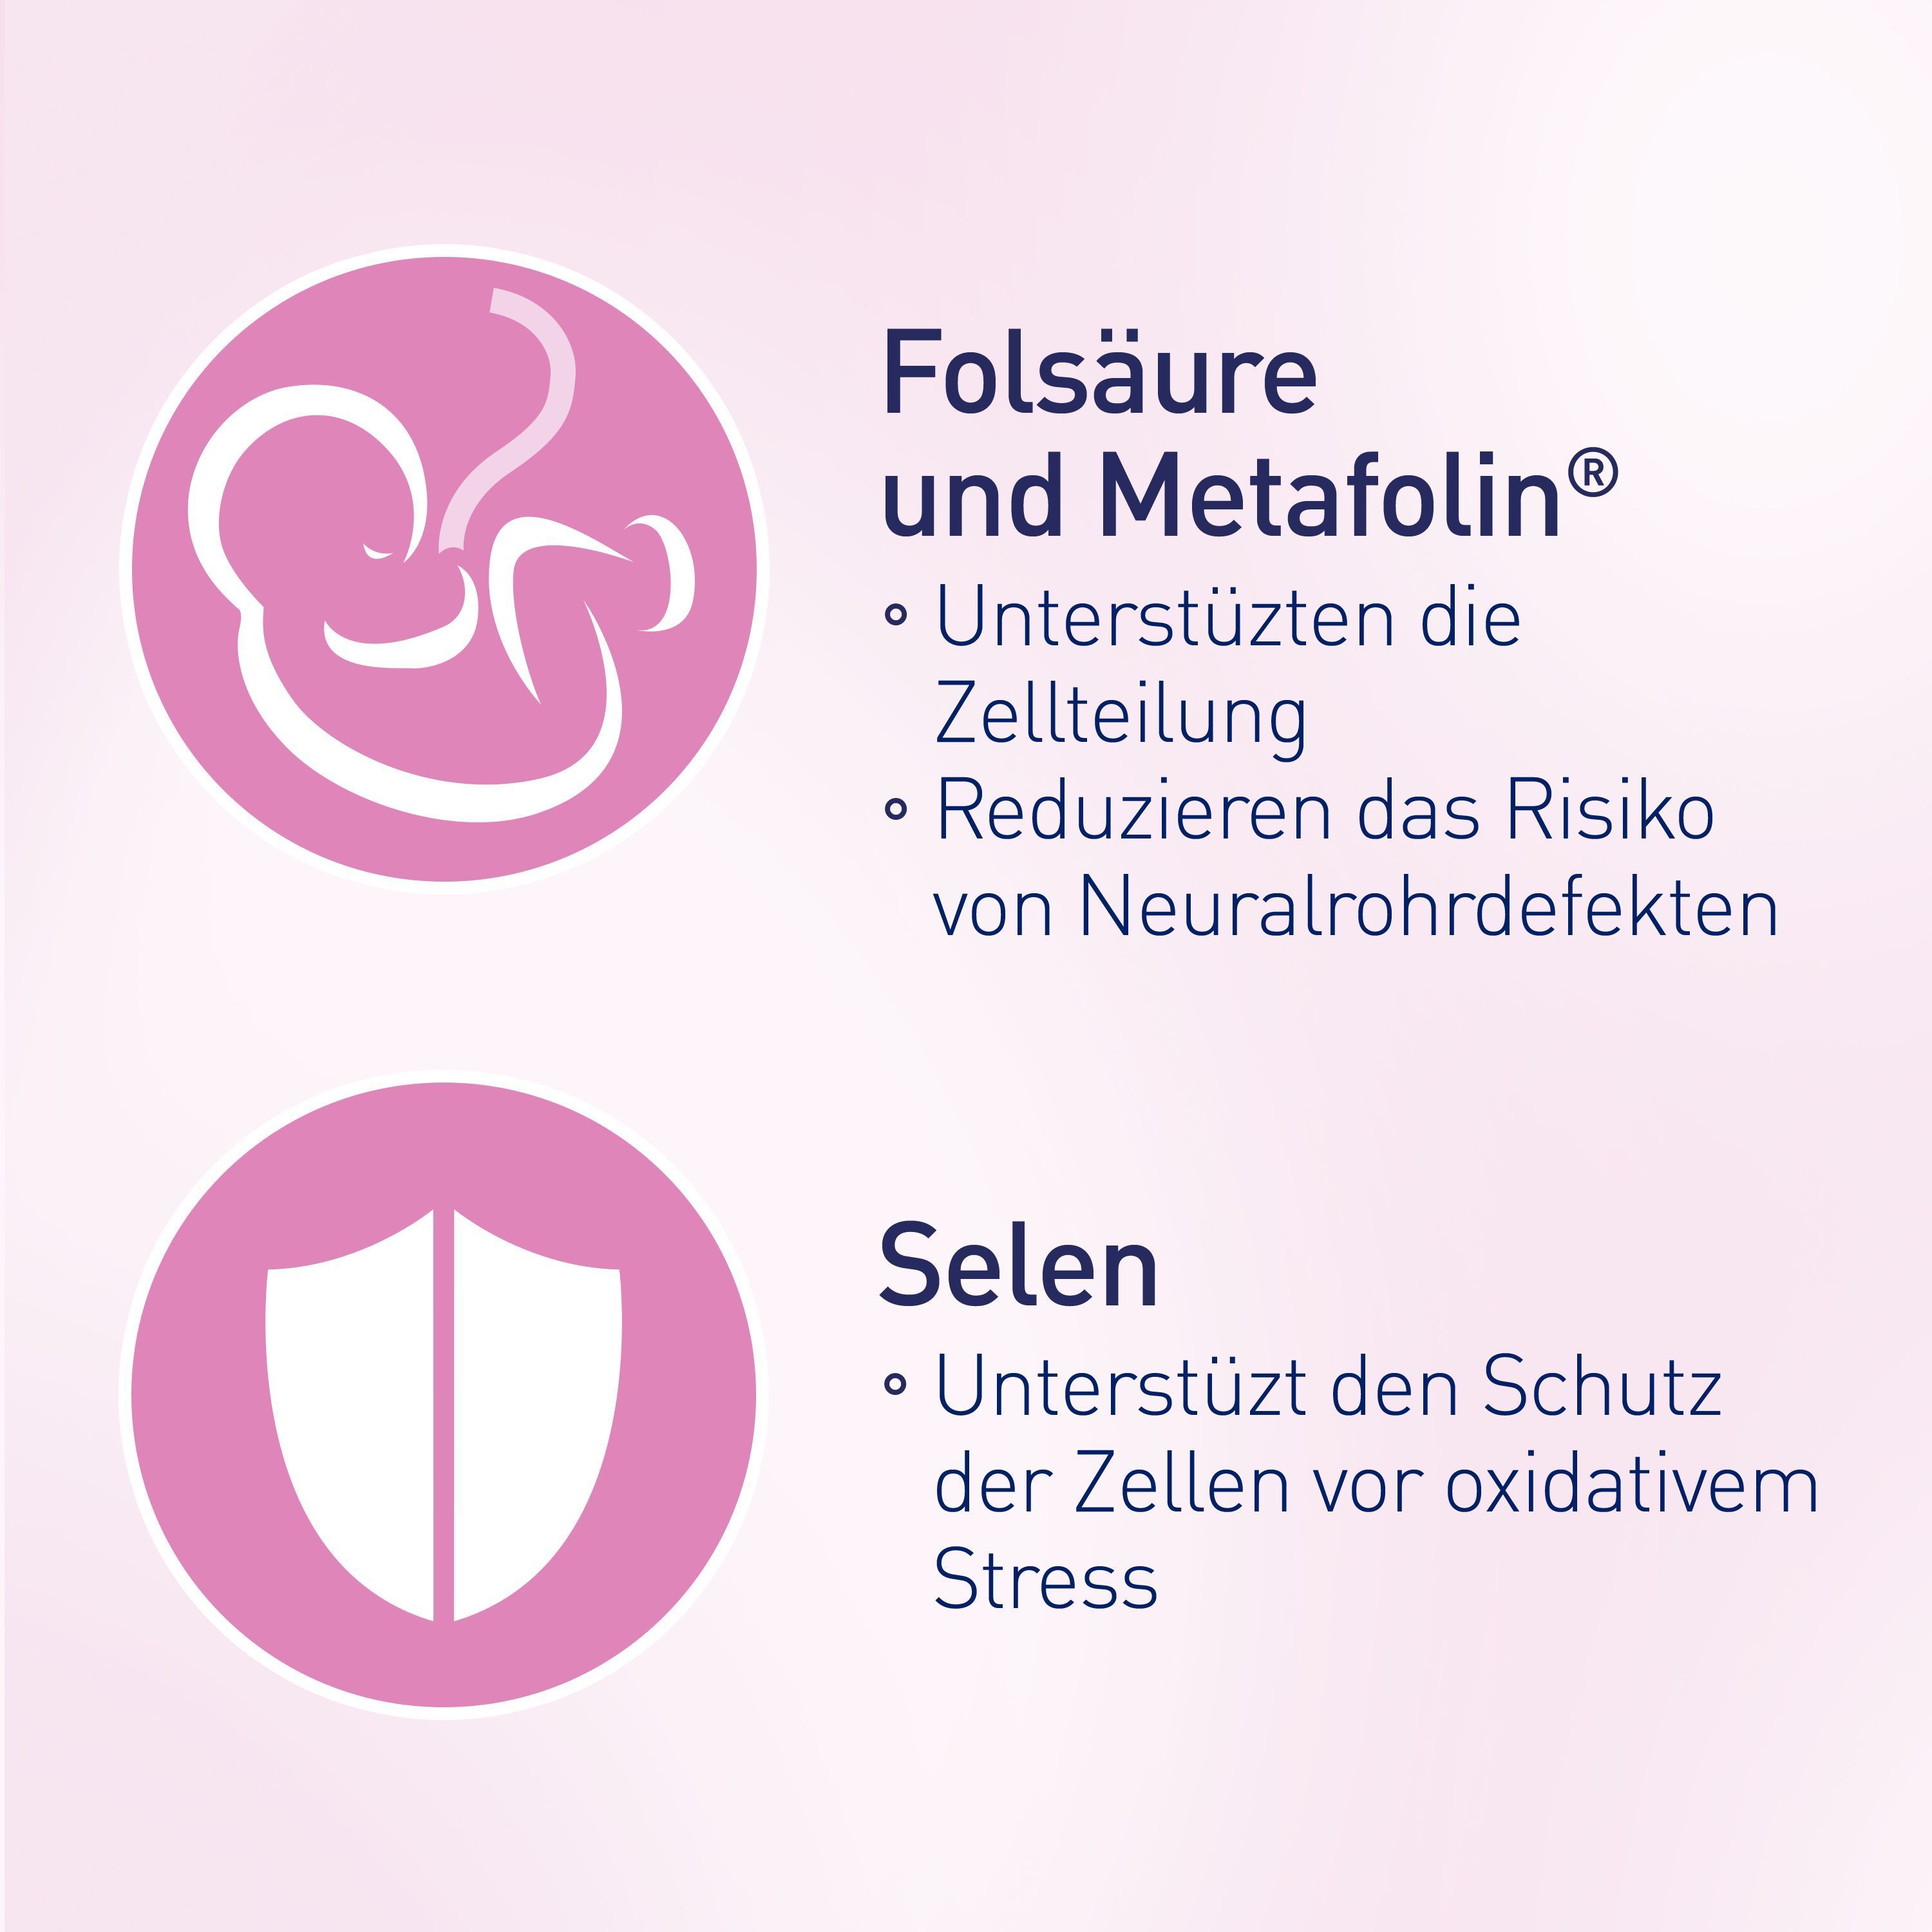 elevit® 1 Kinderwunsch & Schwangerschaft- Jetzt 15% sparen mit dem Gutscheincode ,,Elevit15''